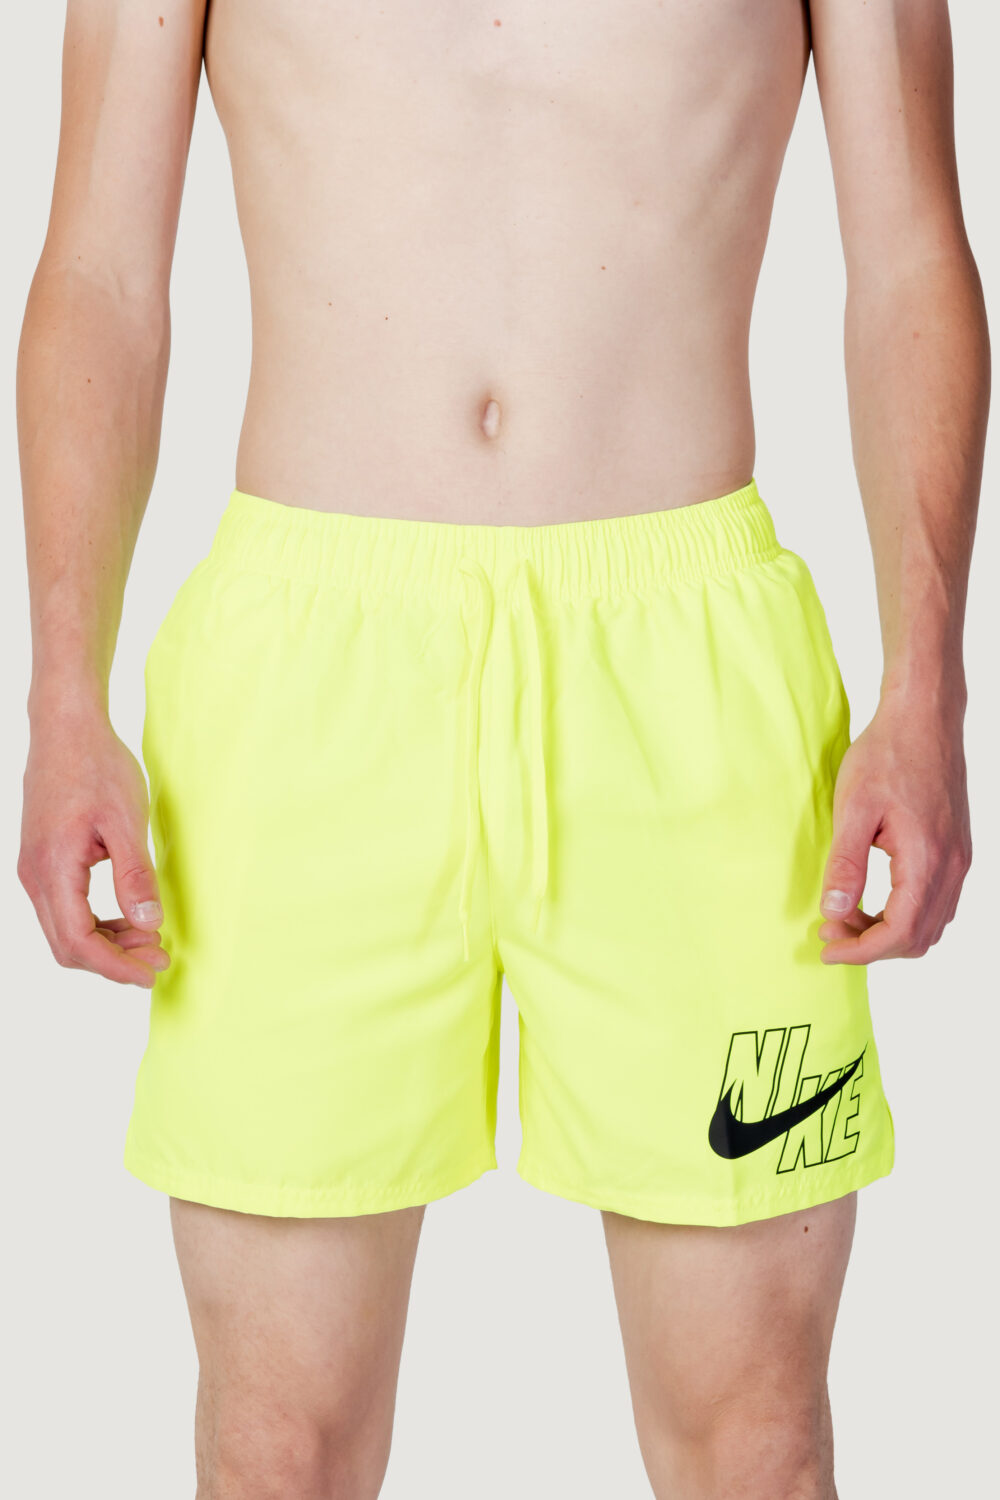 Costume da bagno Nike Swim volley short Giallo fluo - Foto 2